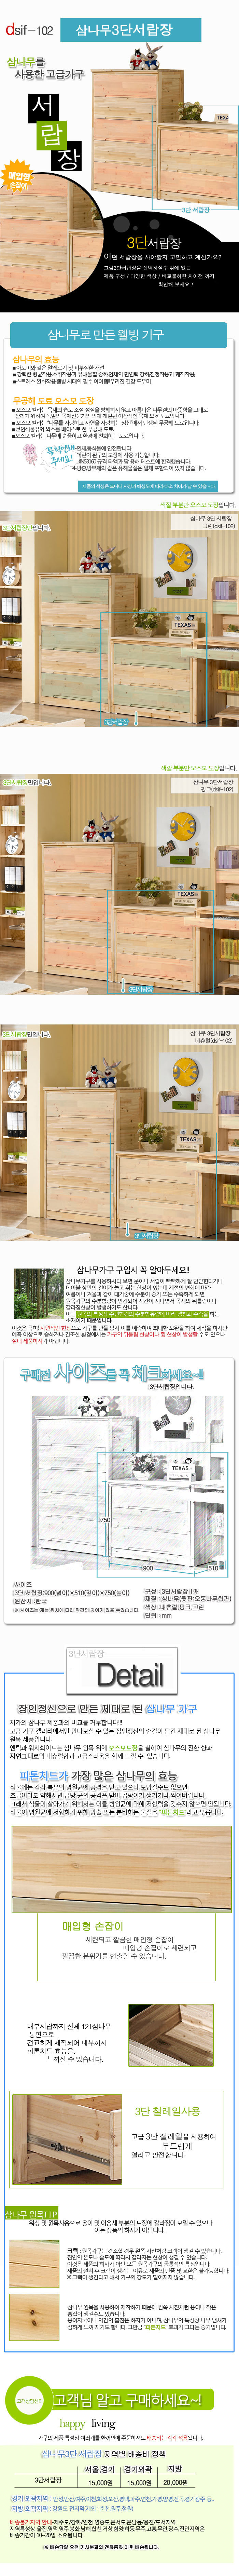 삼나무 원목 3단서랍장 900/국민아기 침실 옷수납장